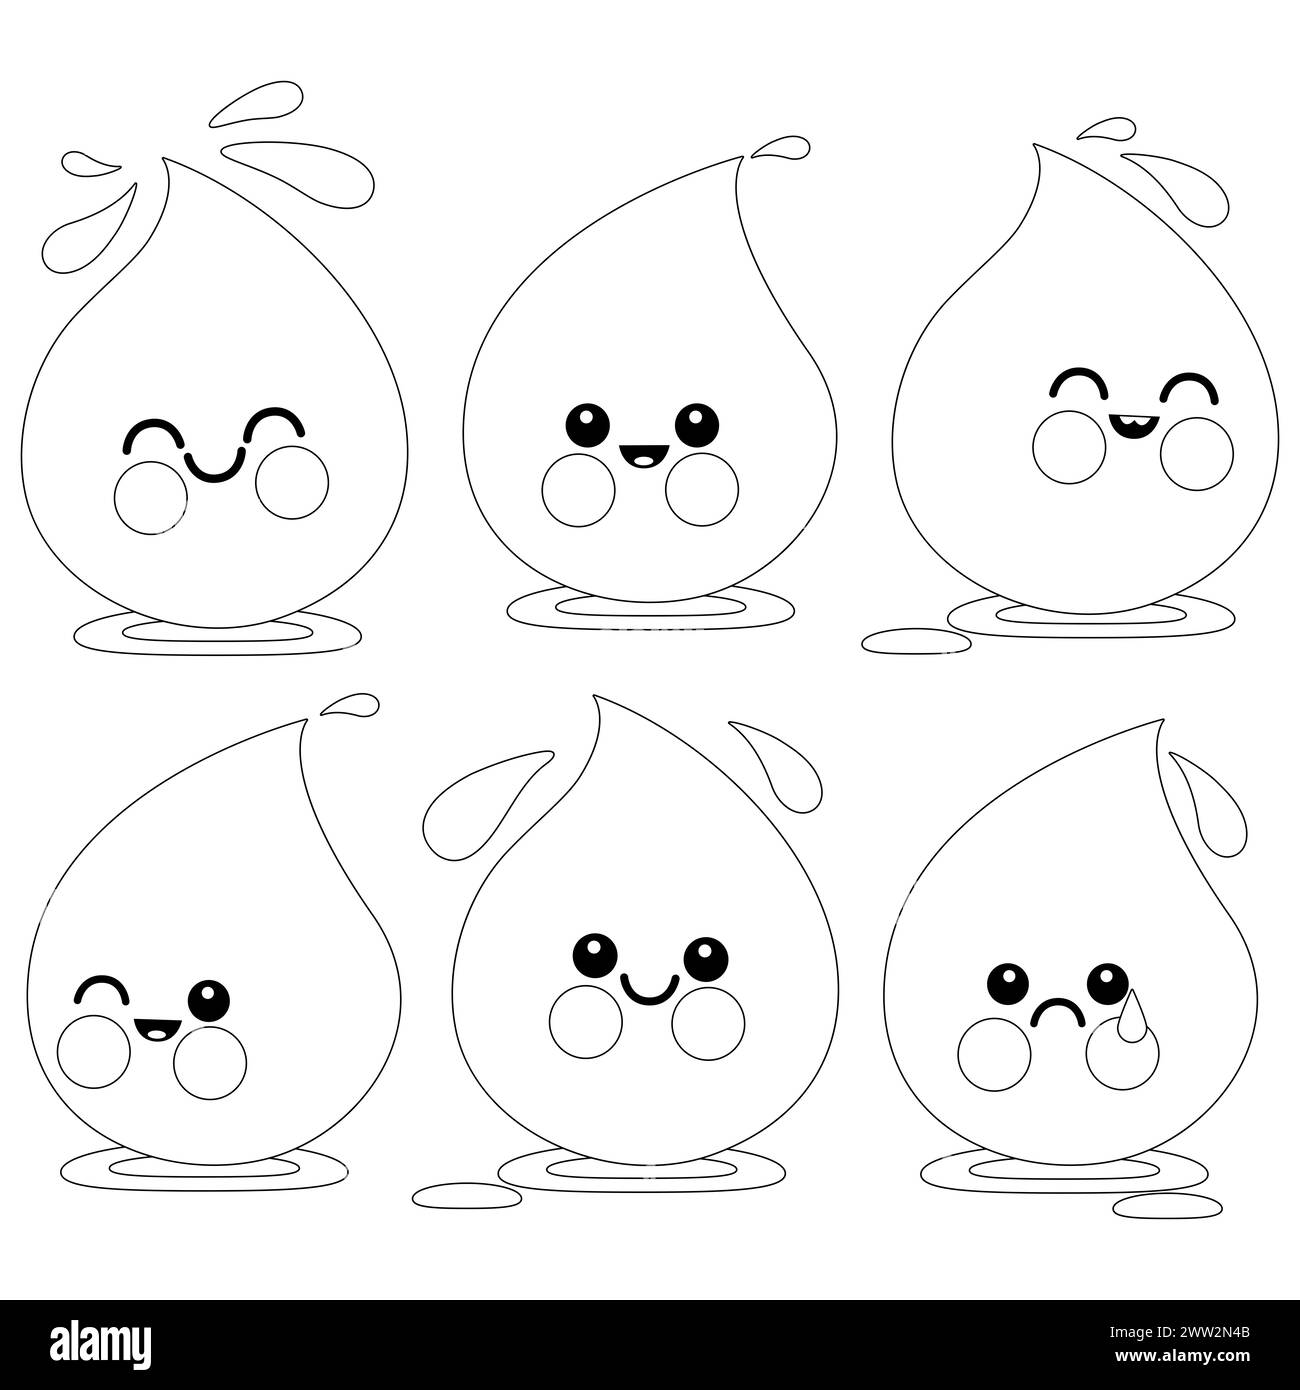 Personaggi a goccia d'acqua dei cartoni animati. Gocce di liquido dolce. Pagina da colorare in bianco e nero Foto Stock